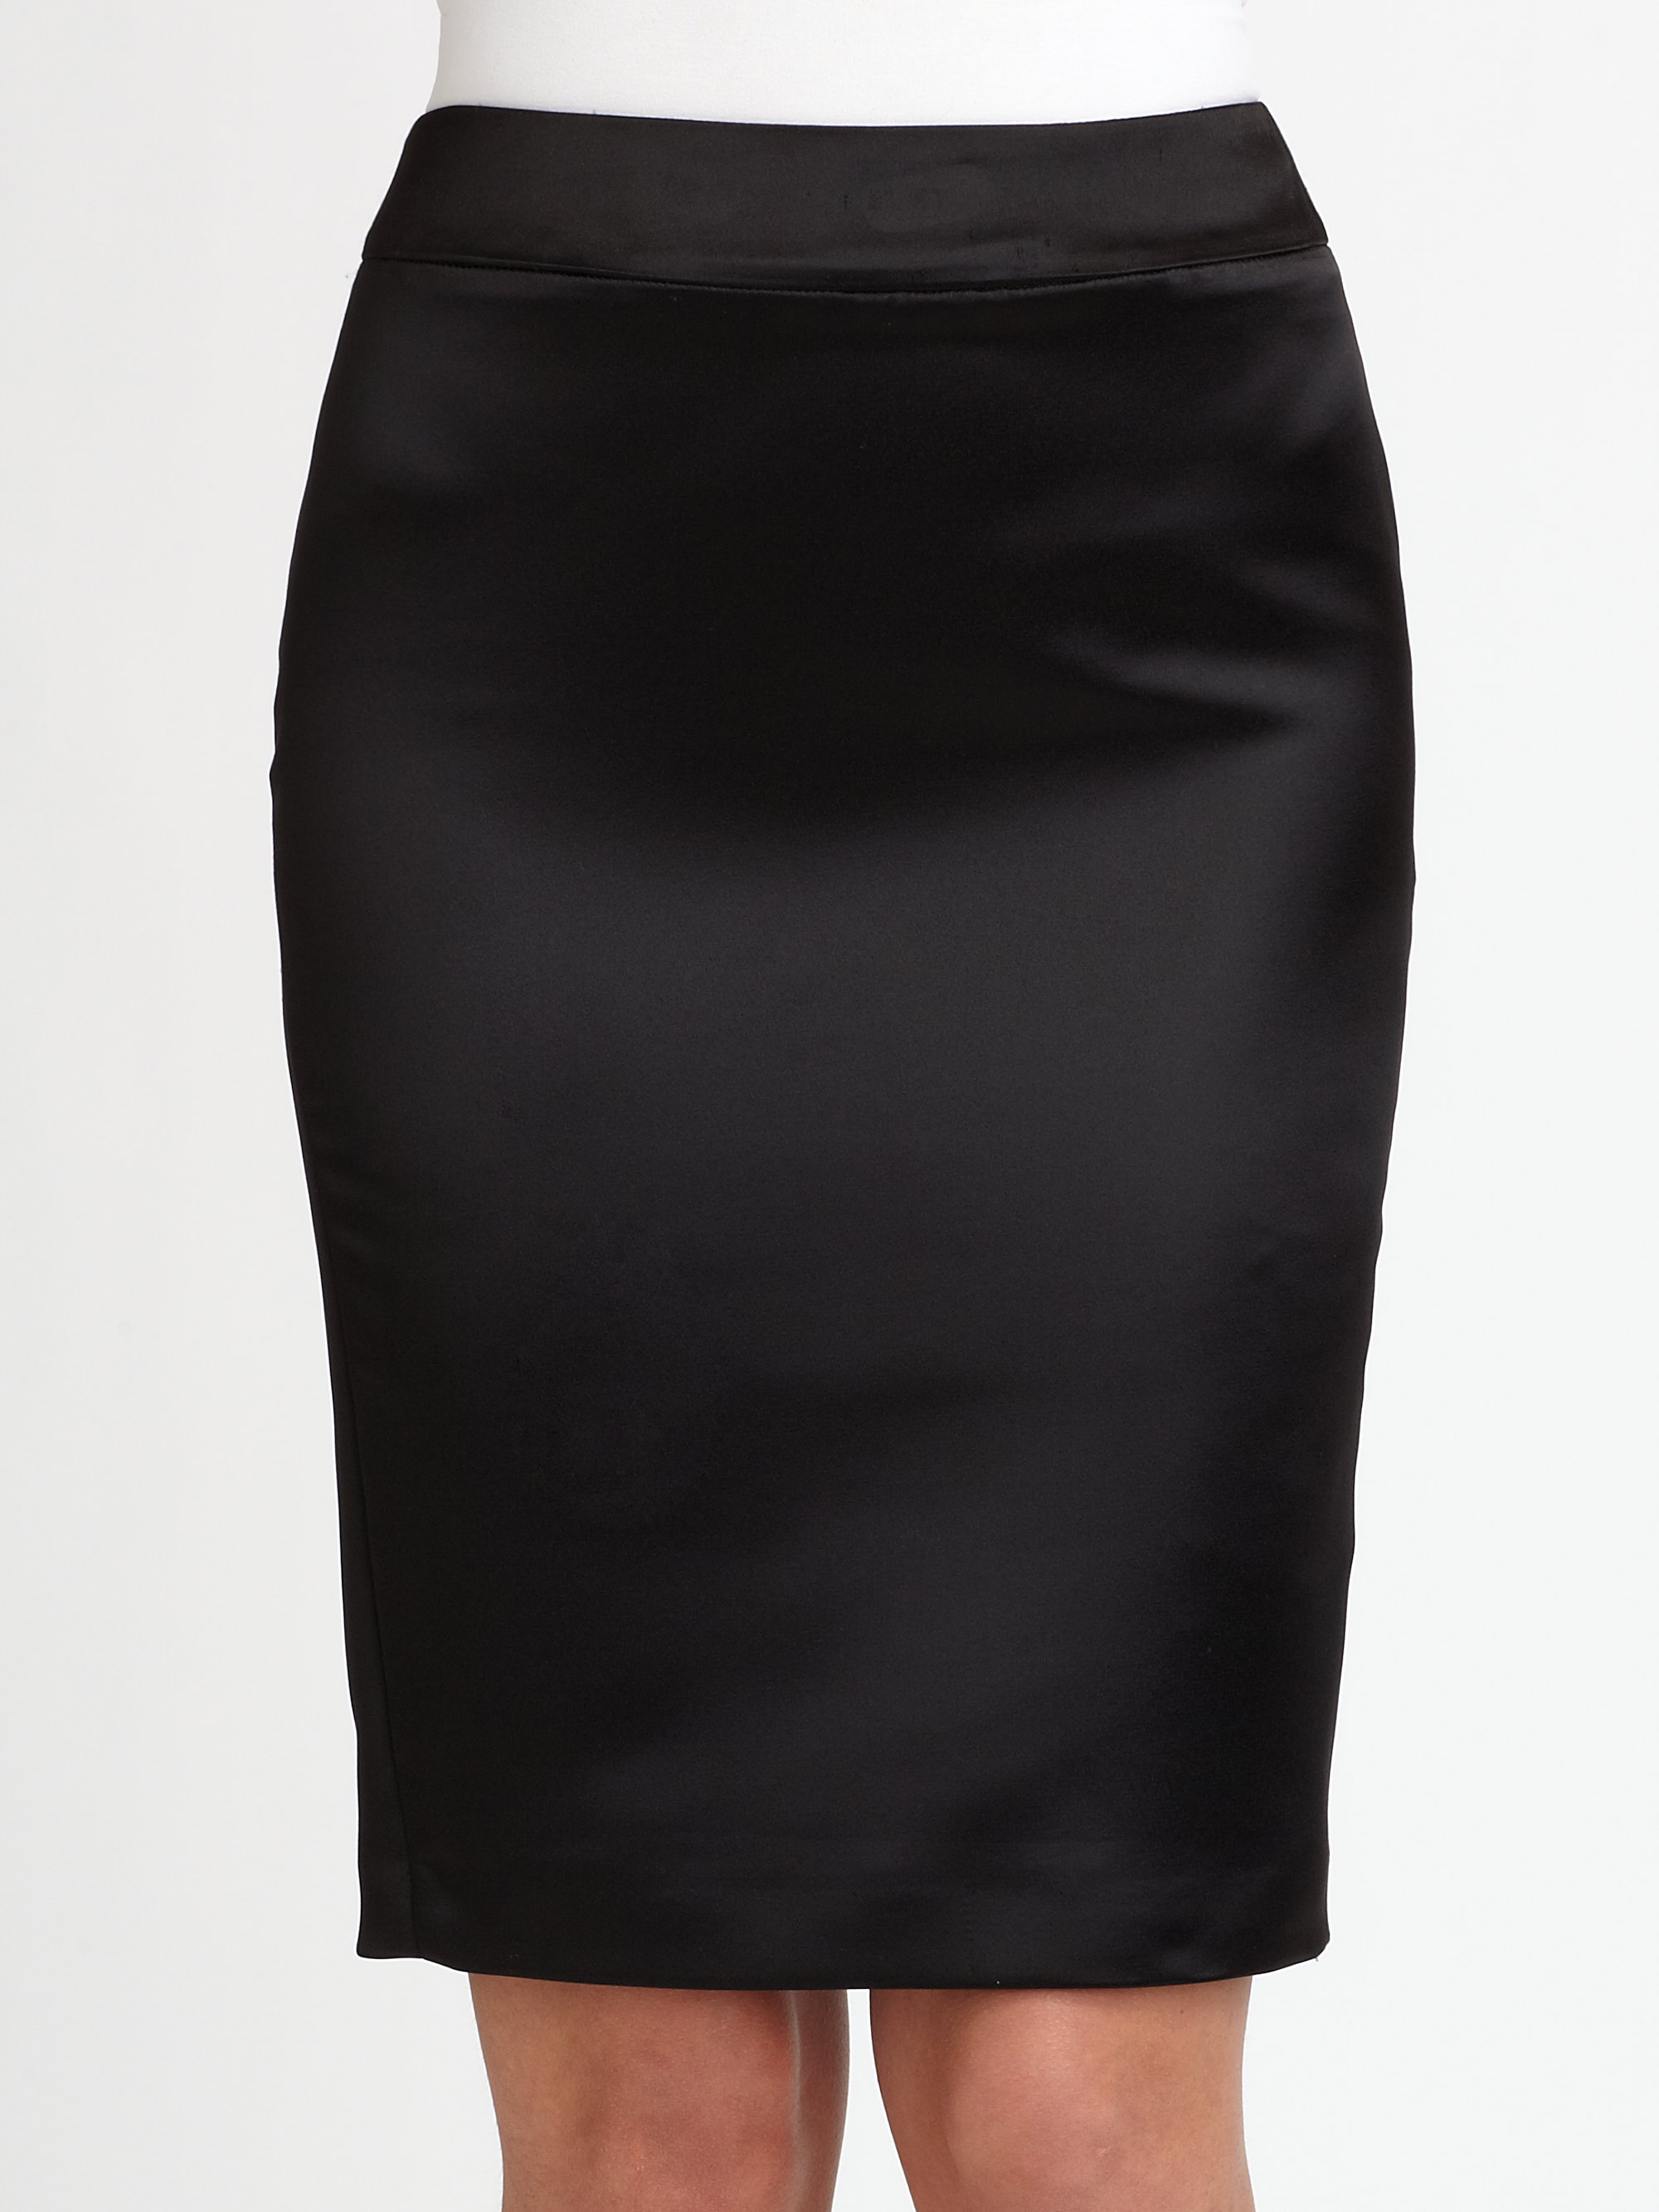 Lyst - Armani Duchess Satin Pencil Skirt in Black